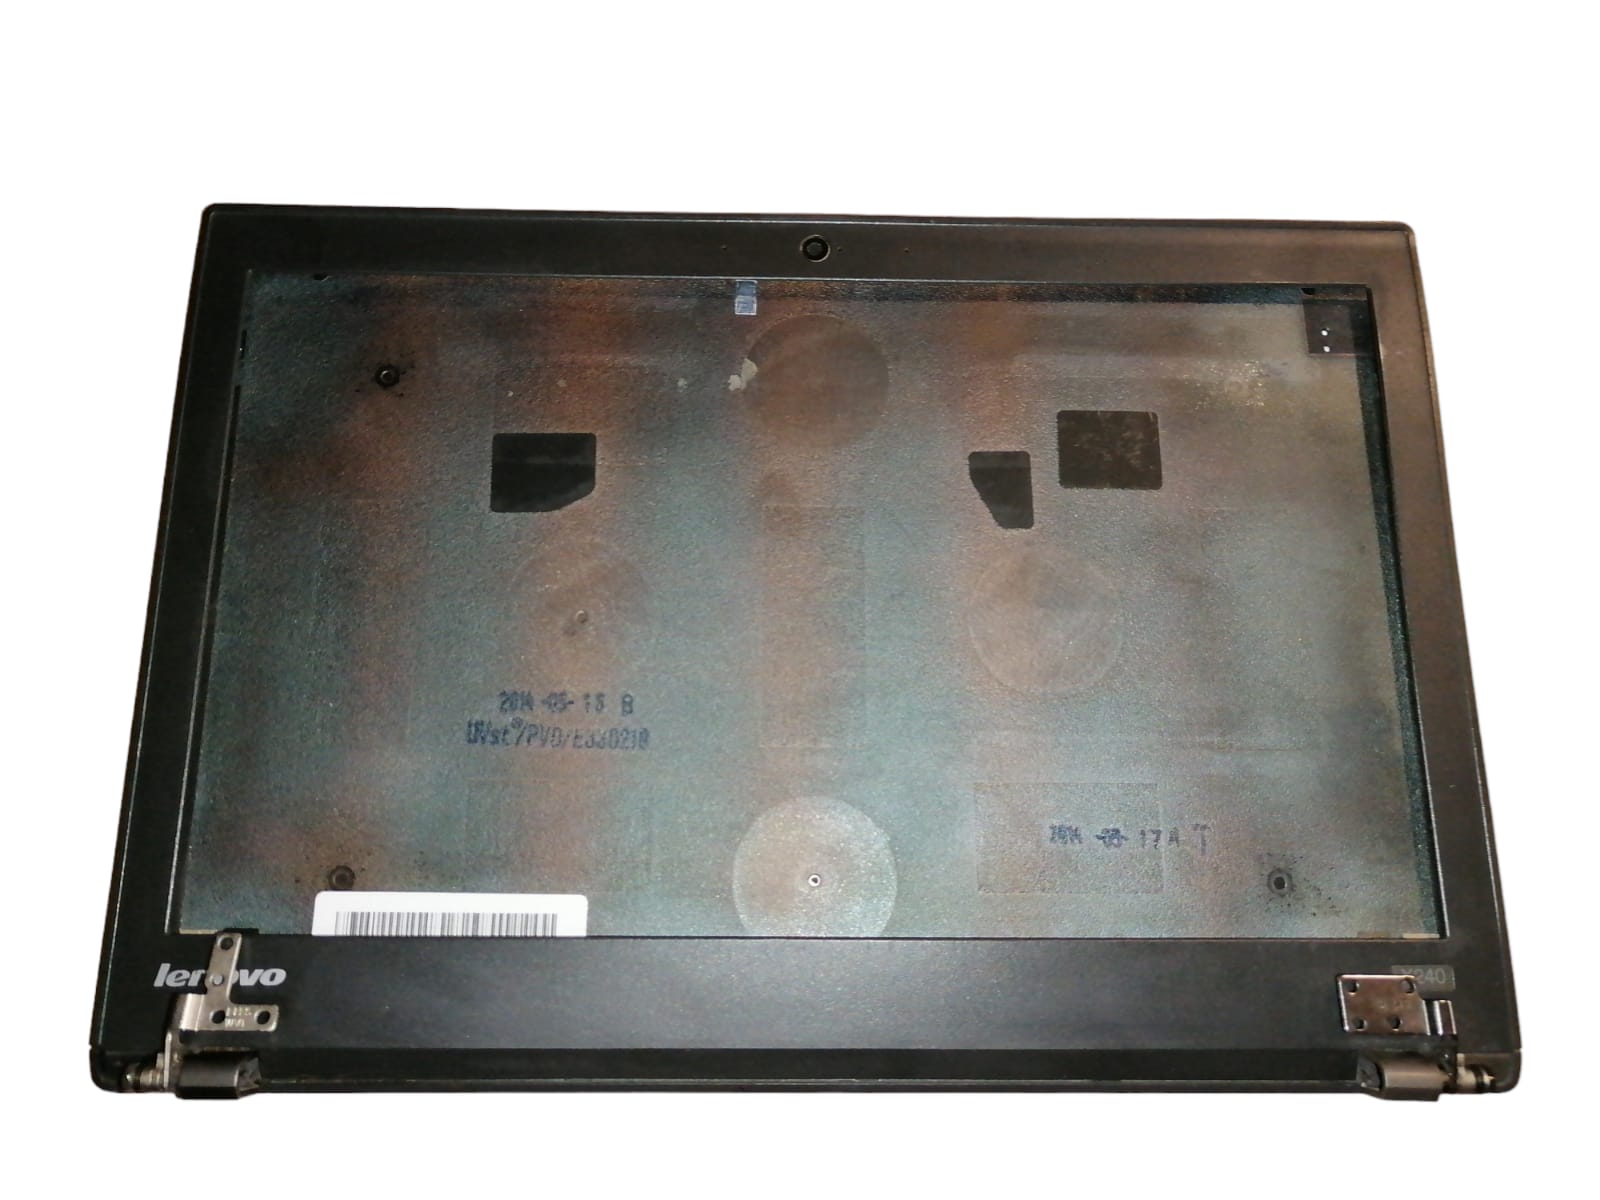 Top-Cover, Bisel, Bisagras y Cables de antena de Laptop  Lenovo 12.5" Modelo X240 (Producto usado)